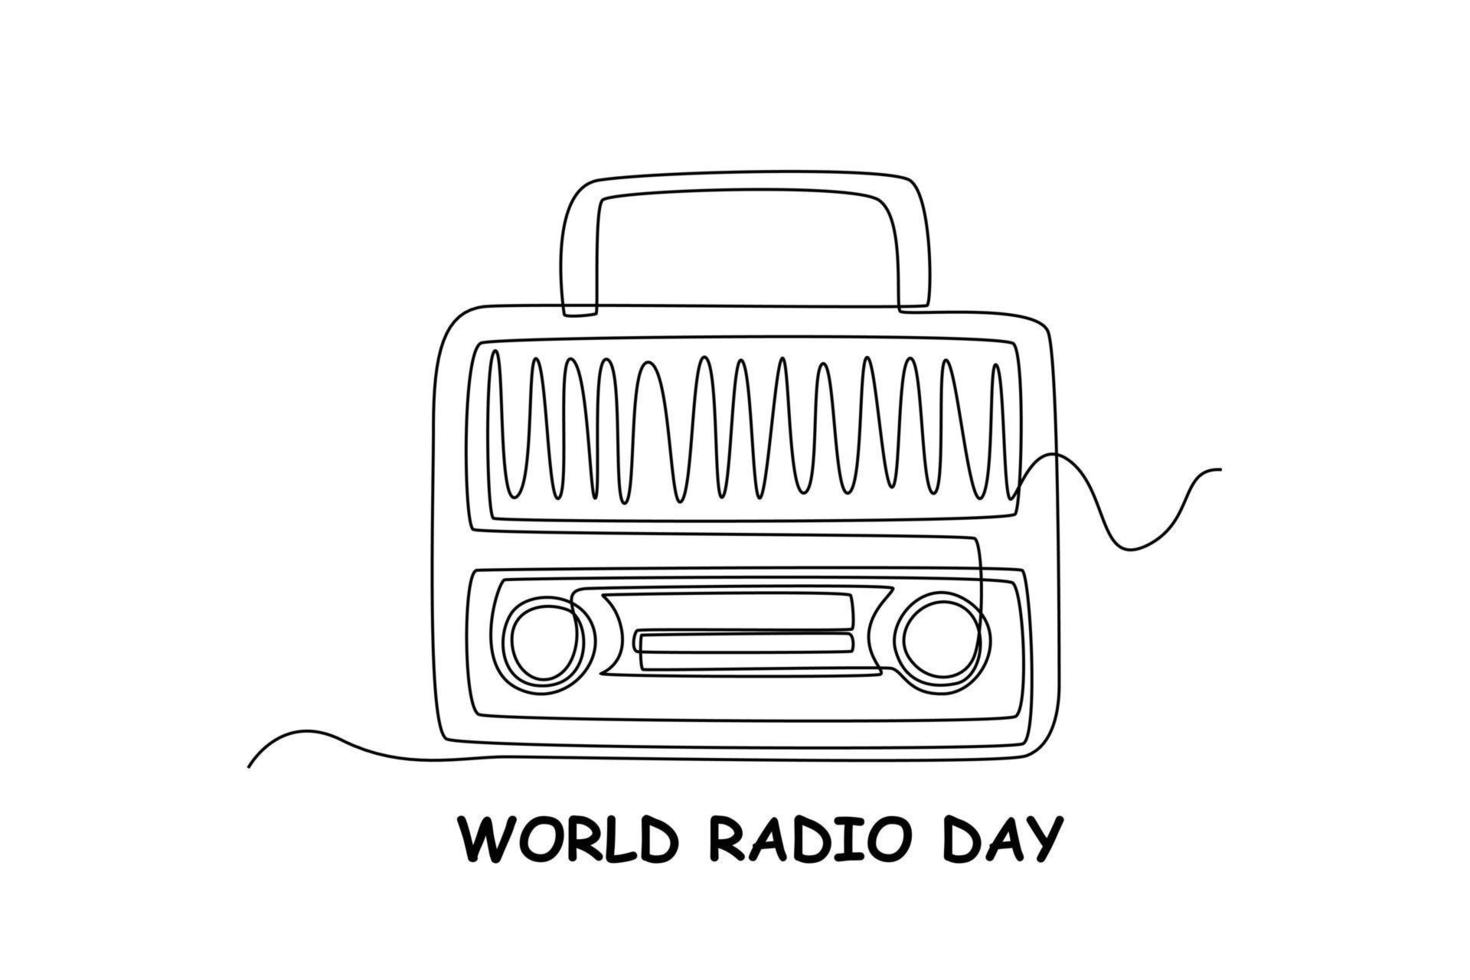 singolo uno linea disegno retrò stile Radio. mondo Radio giorno concetto. continuo linea disegnare design grafico vettore illustrazione.